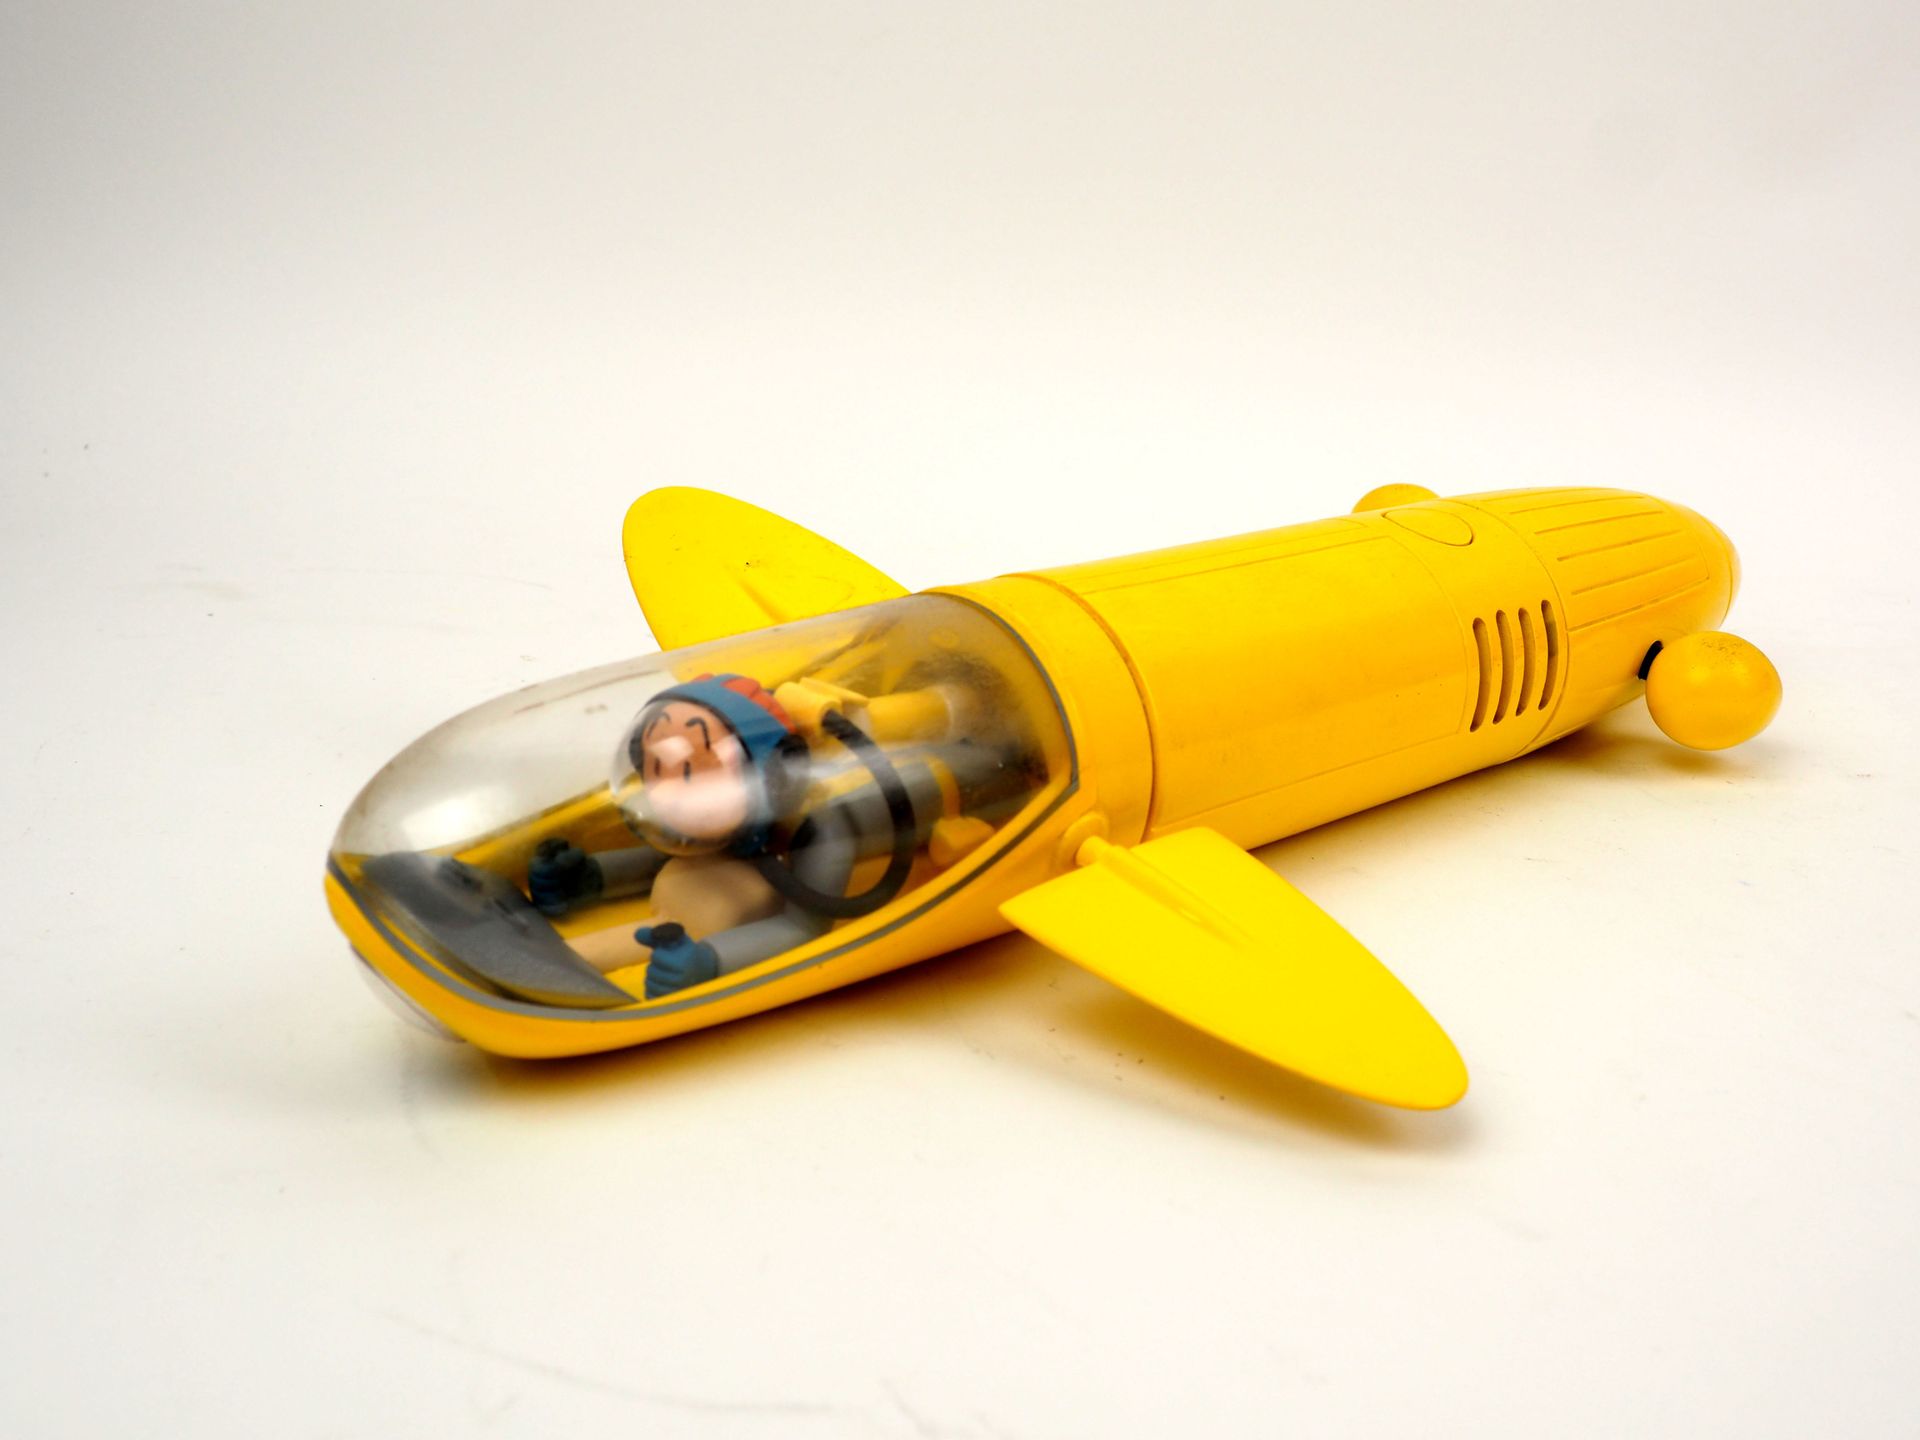 Null FRANCHINO
Spirou e Fantasio
Il sottomarino giallo
Figurina pubblicata da Ar&hellip;